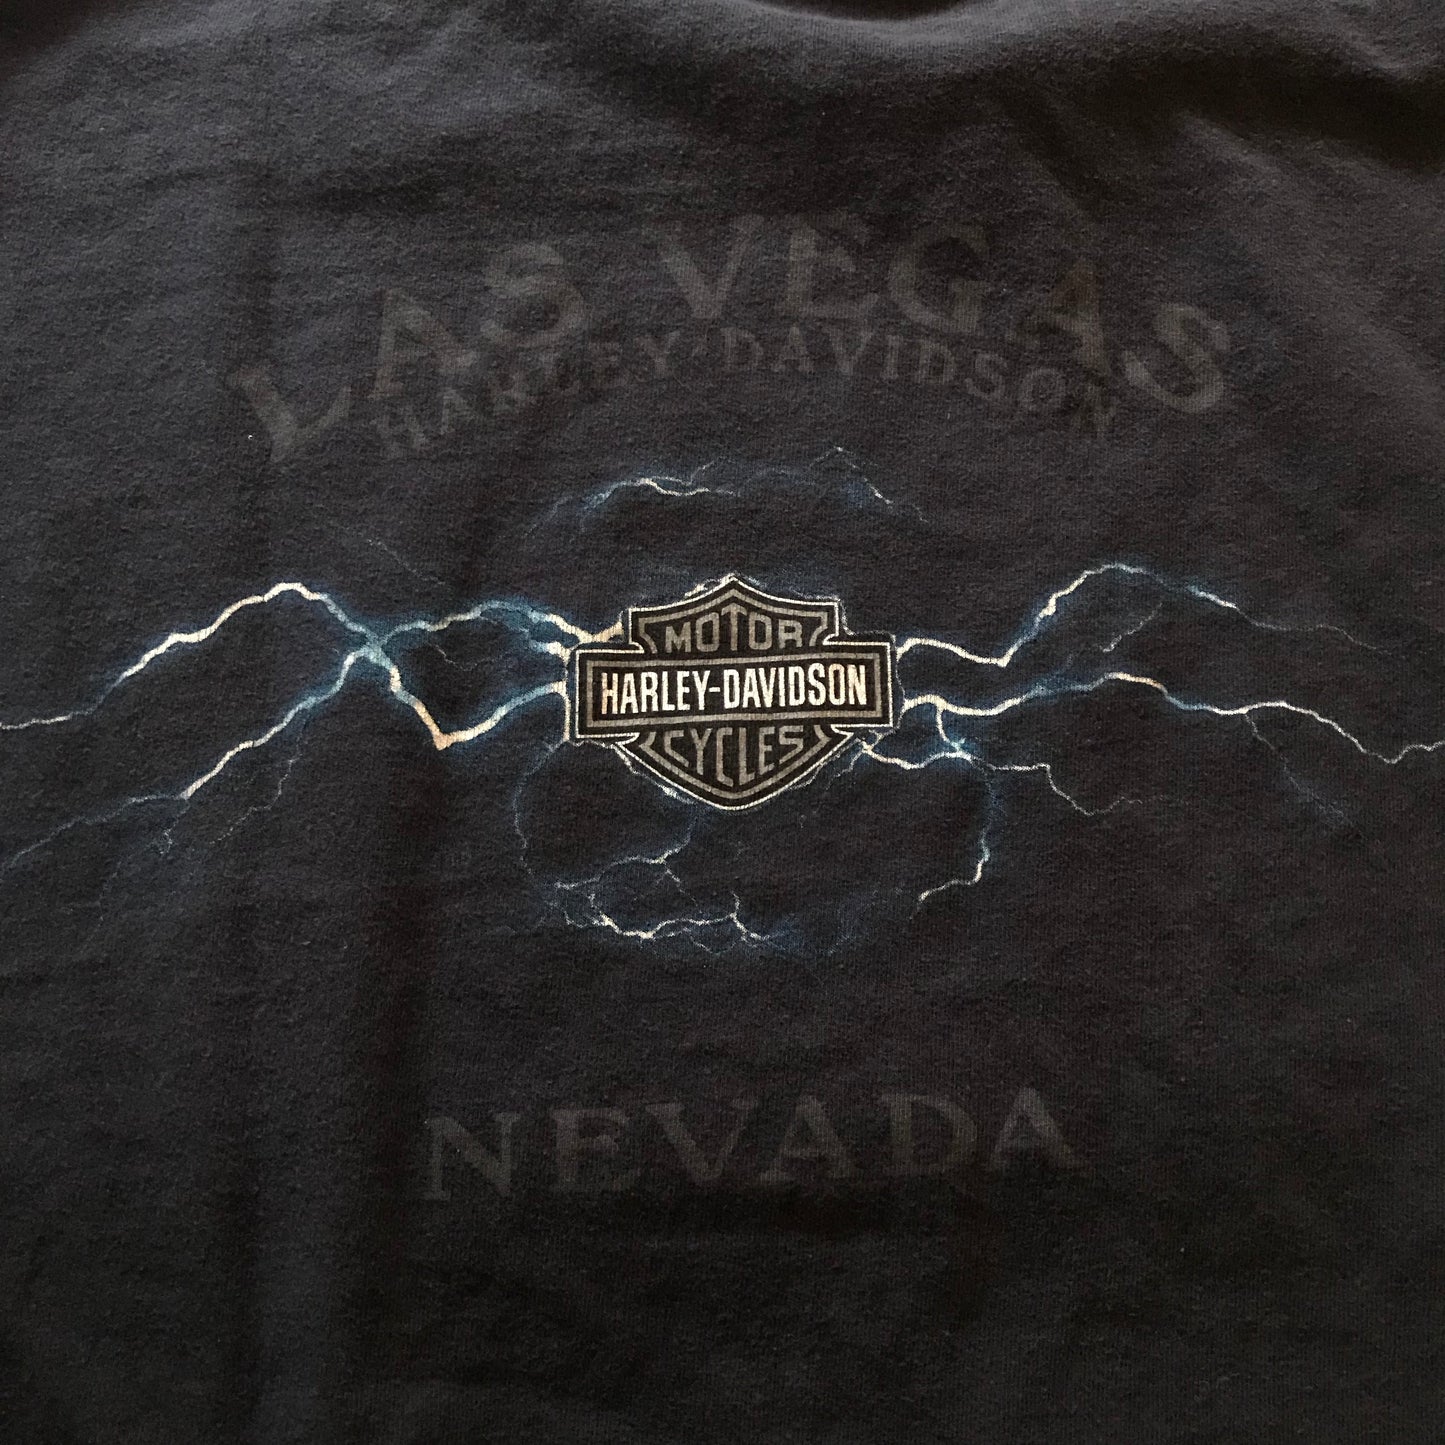 Harley Davidson Long Sleeve T-shirt